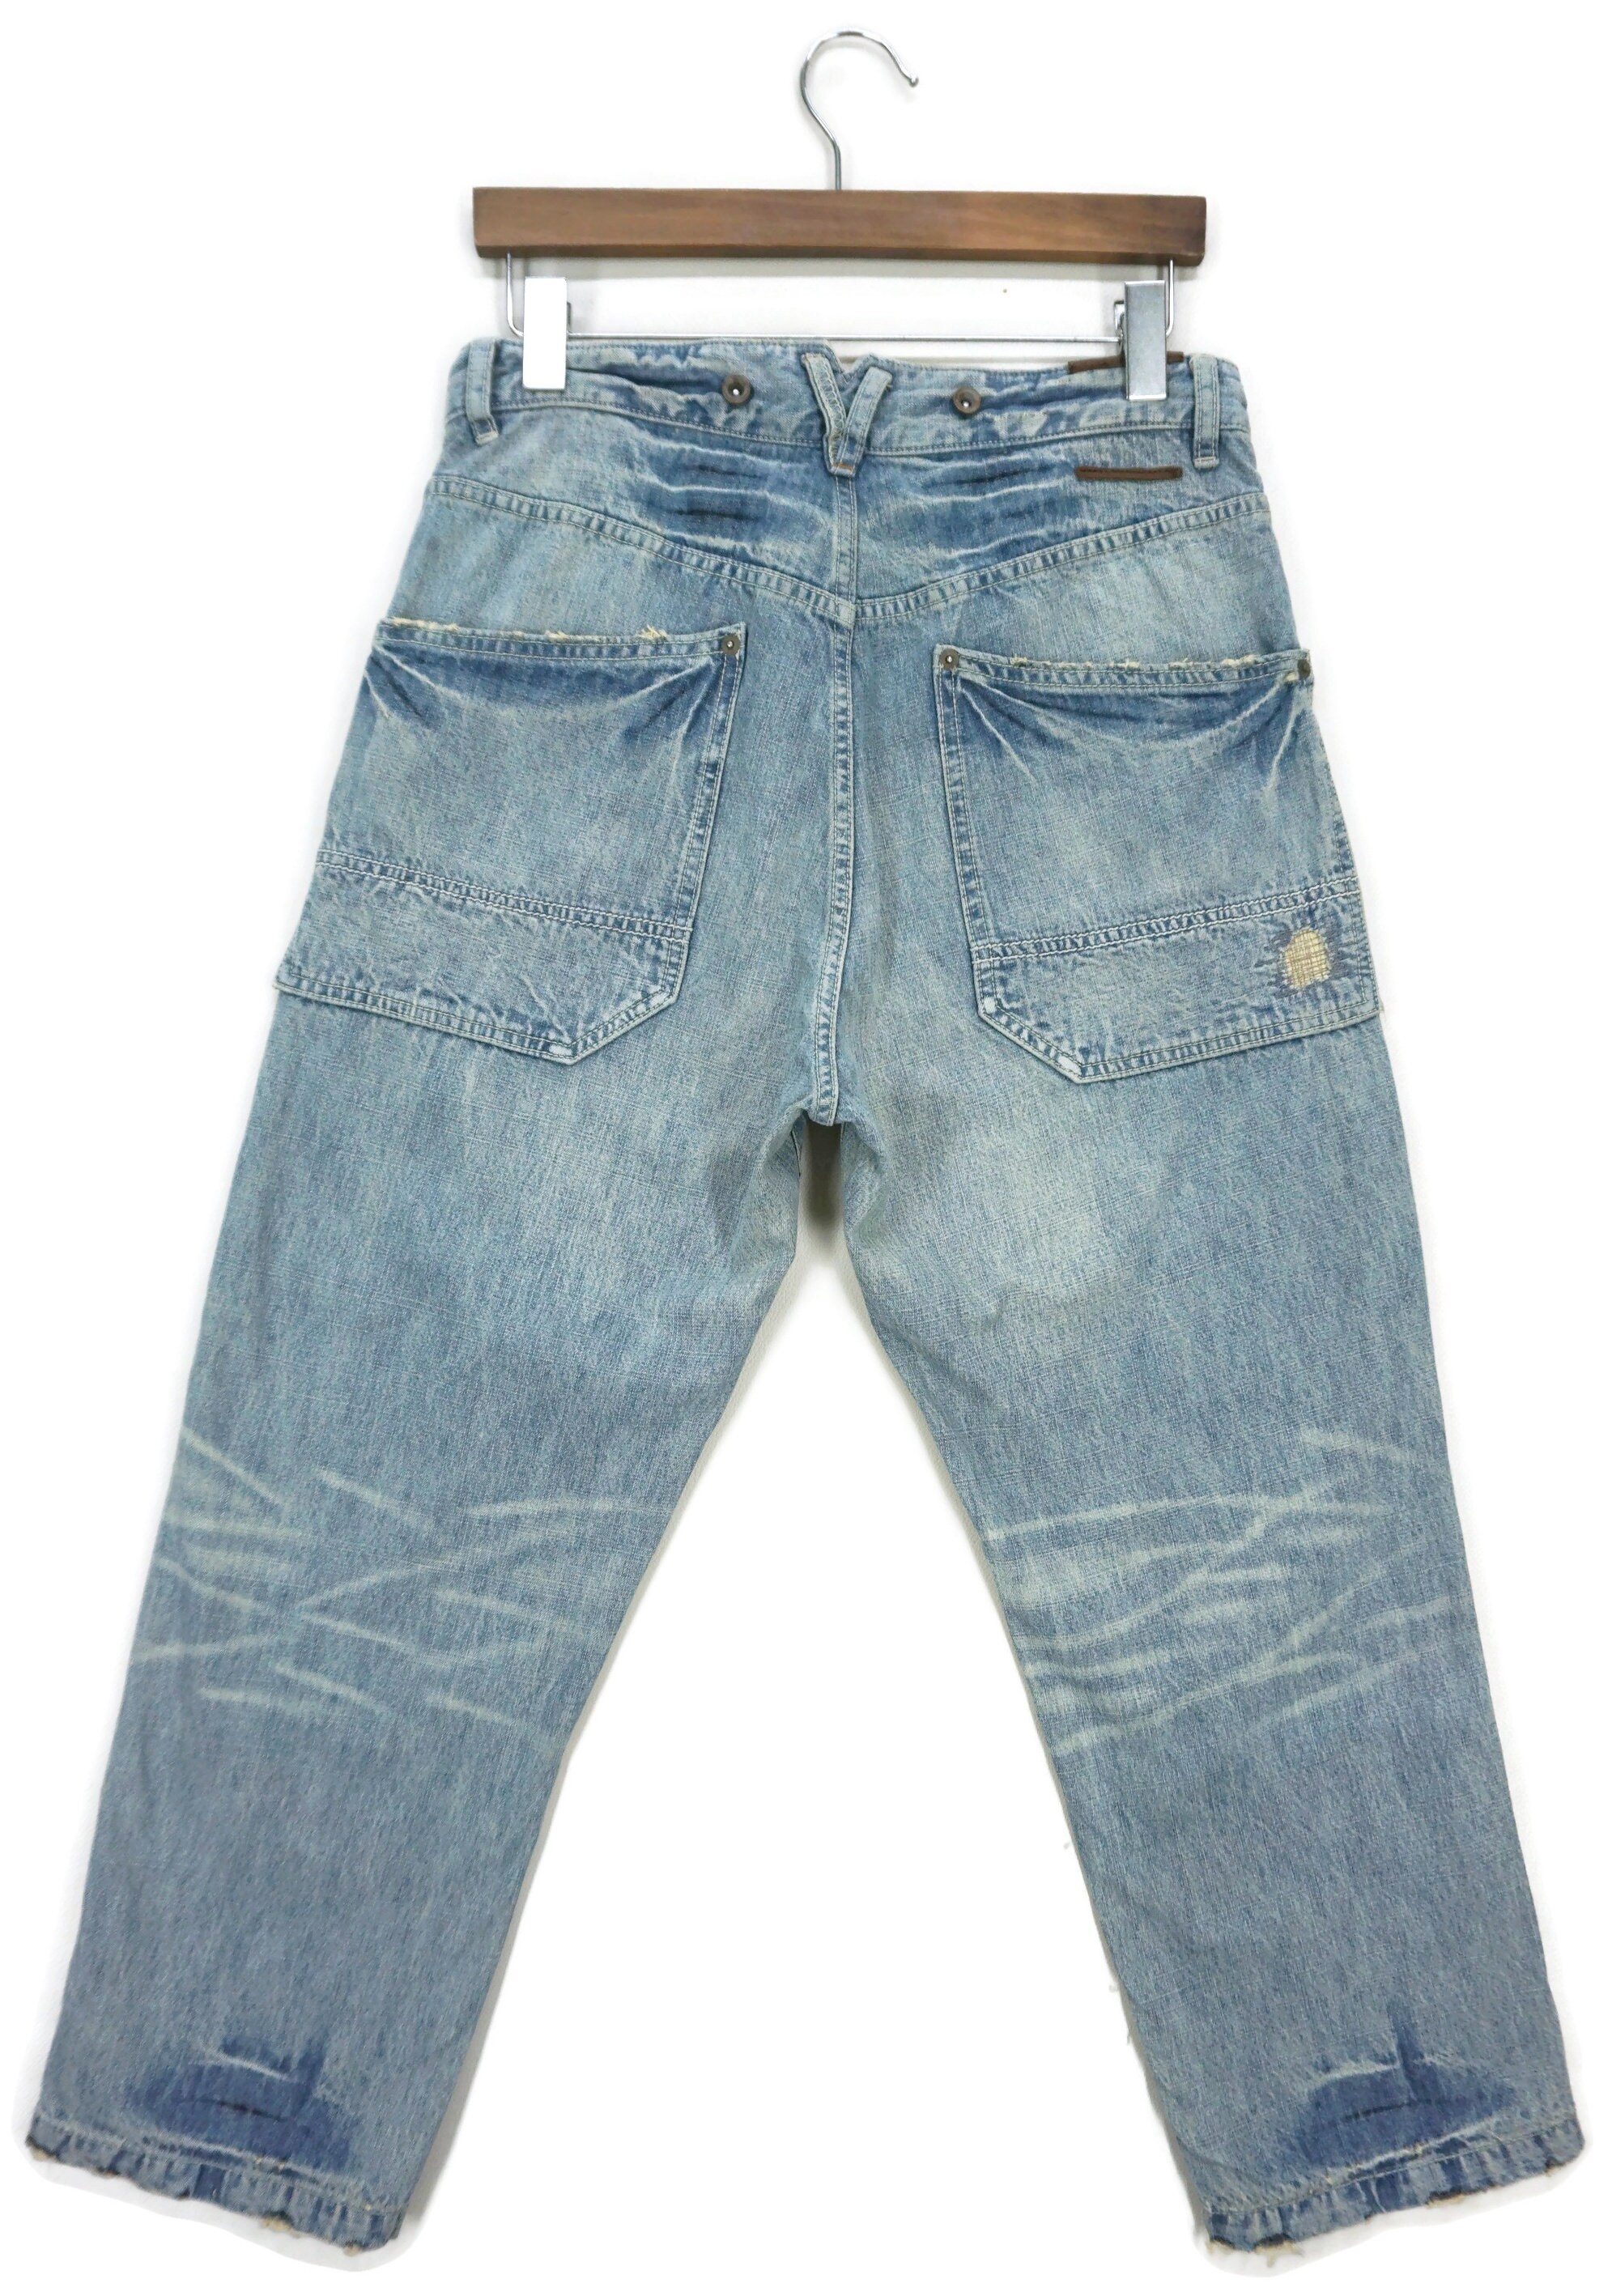 Shirt Jeans Original - Blue Denim [Size: XL] - SugarClothes